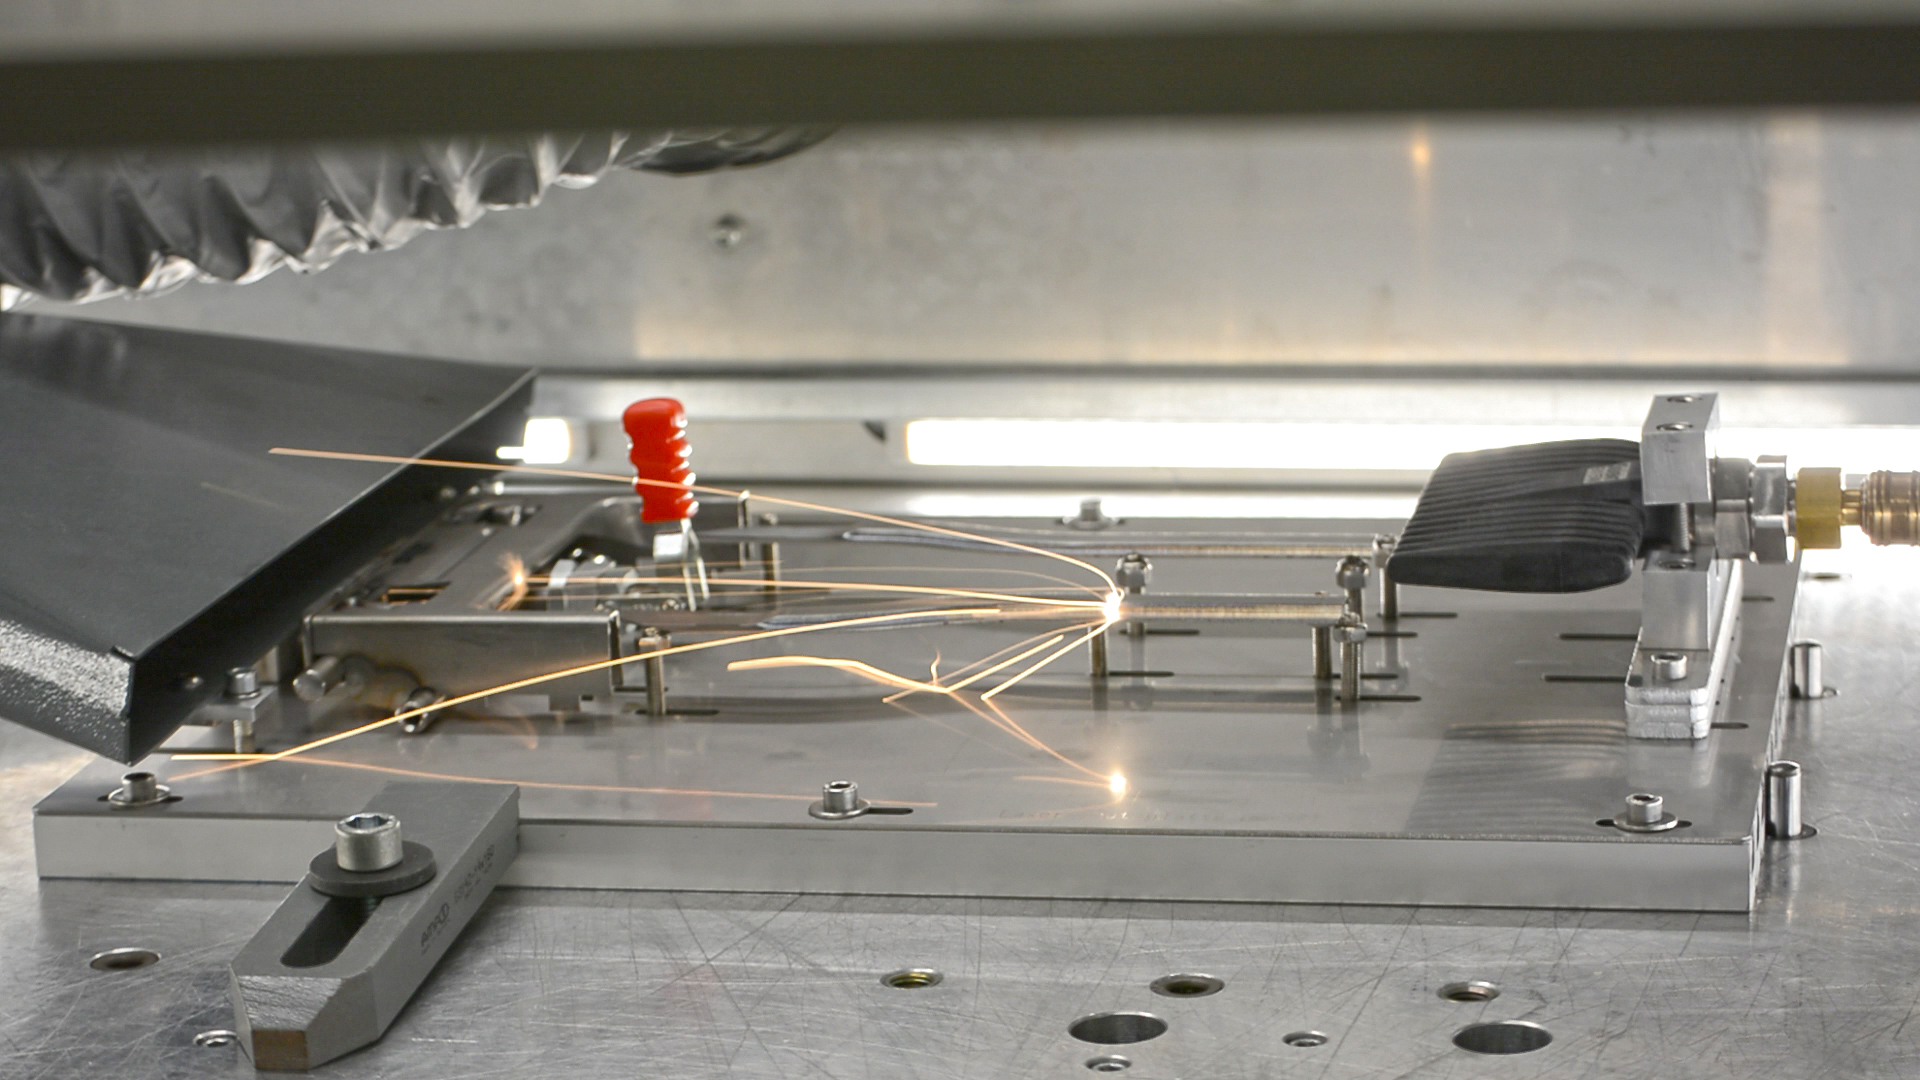 Das Laser-Remote-System bewegt den Laserstrahl mit bis zu 10 m/s über das Bauteil. Die Oberfläche des Metalls wird dadurch gereinigt und mit einer Furchenstruktur versehen. In diese Furchen kann beim nachfolgenden thermischen Fügen oder Anspritzen der Kunststoff eindringen und sich verankern. So entstehen stabile Kunststoff-Metall-Hybridverbindungen.